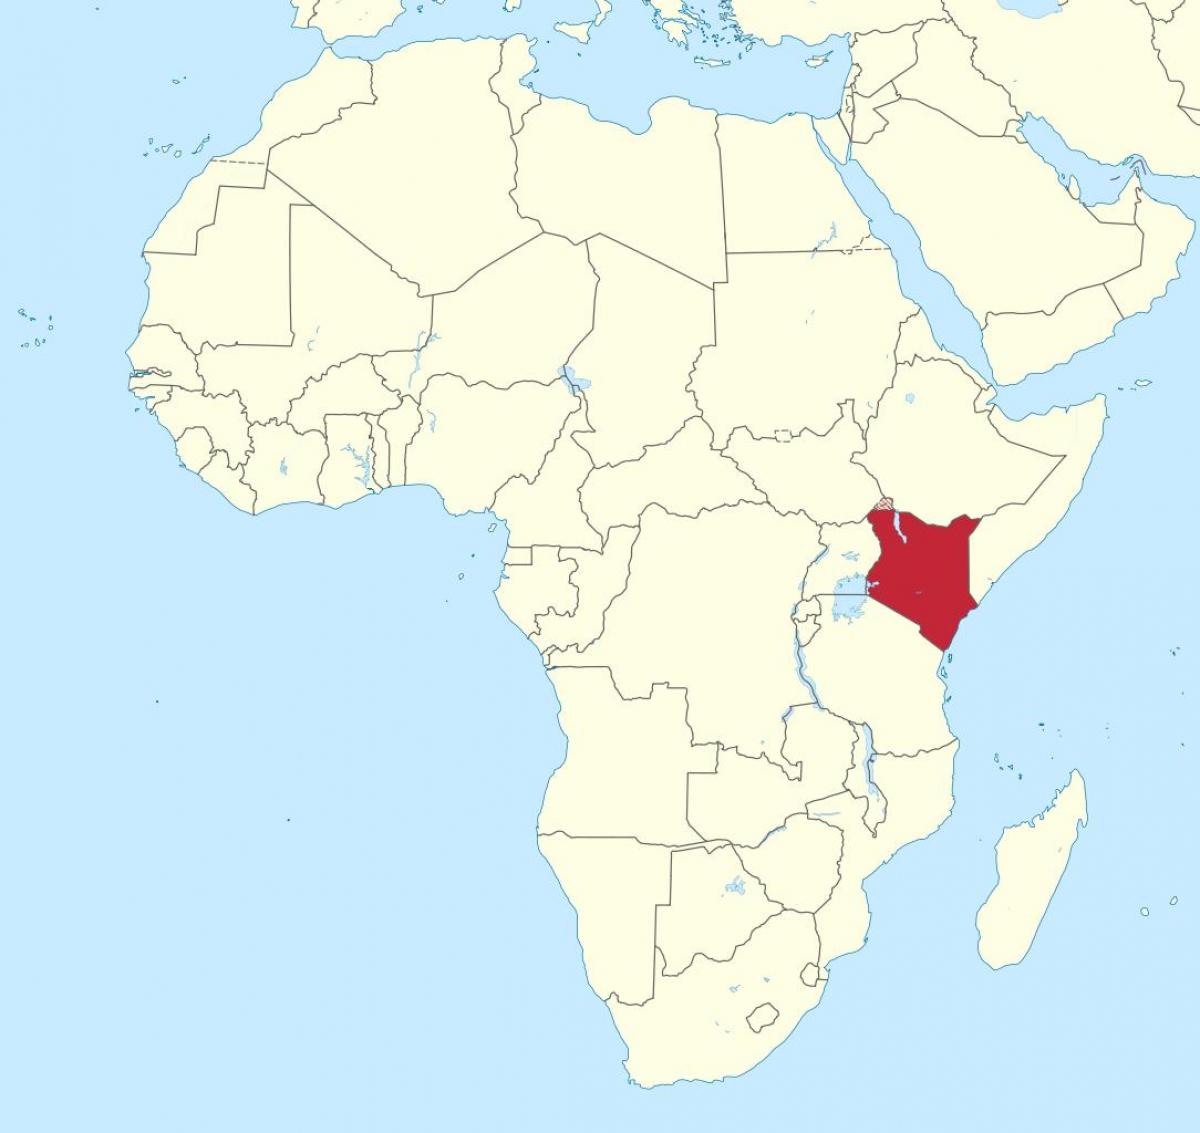 Kenya phi bản đồ - bản Đồ của phi đang ở Kenya (Đông Phi châu Phi)